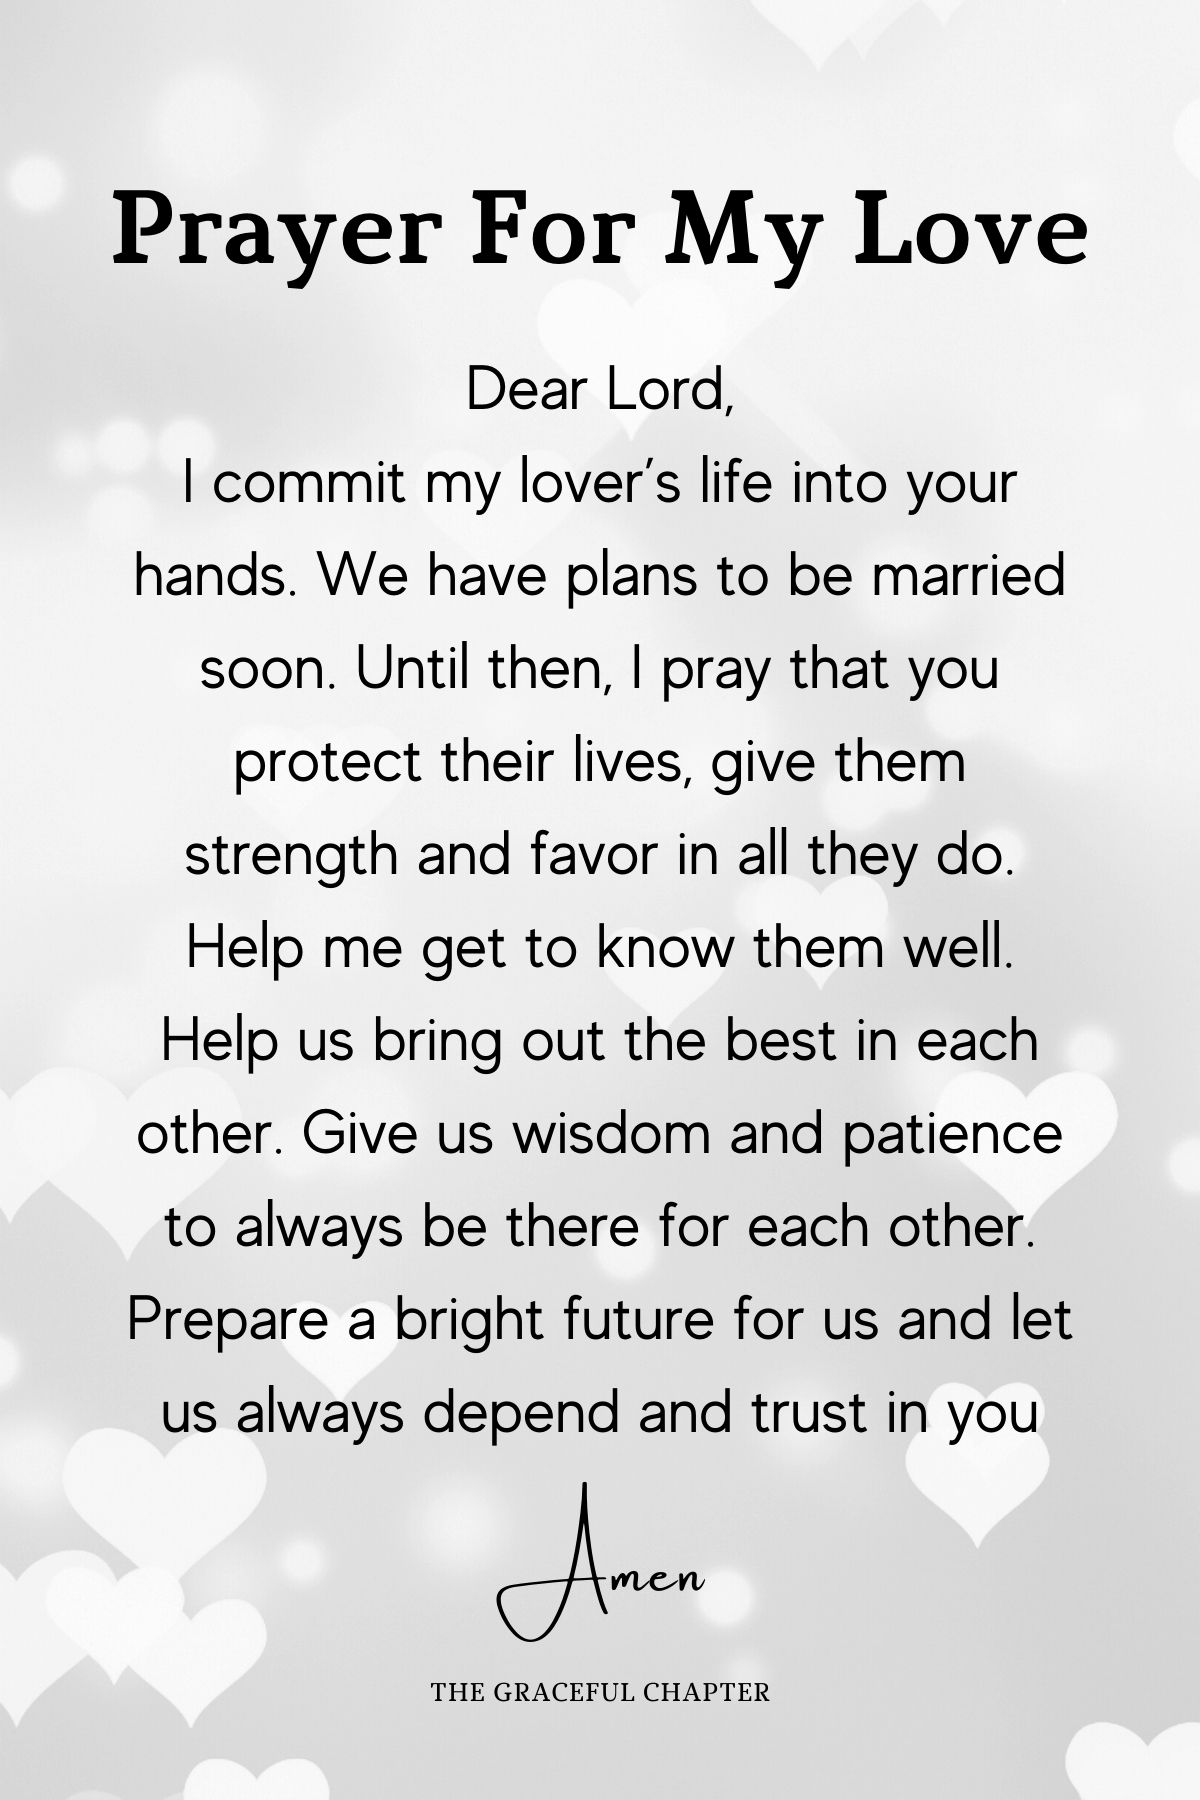 Prayer for my love